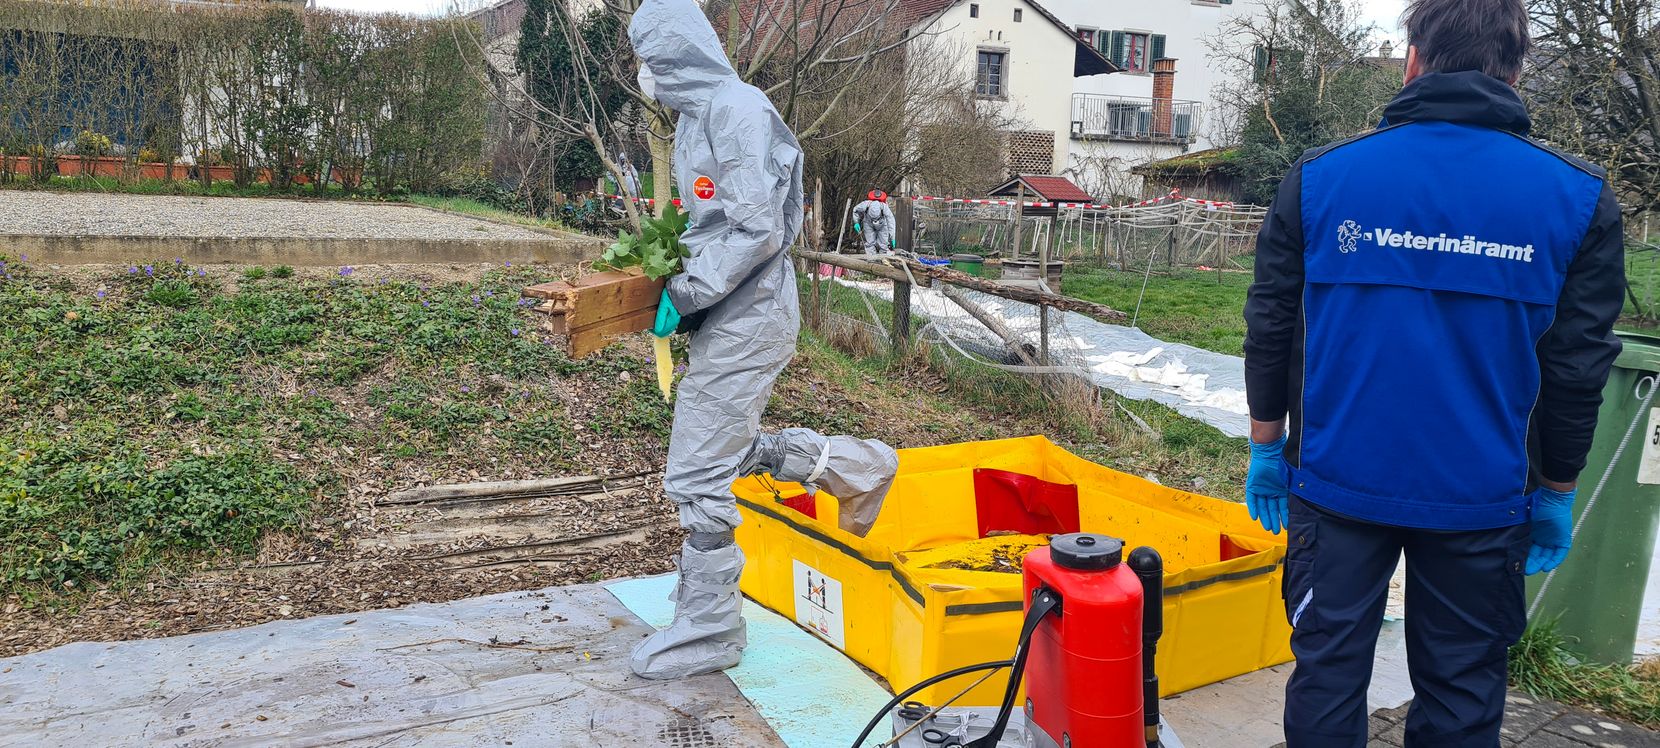 Ein Mensch in einem Schutzanzug trägt kontaminiertes Material von einem Hof – daneben steht ein Mann vom Veterinäramt.